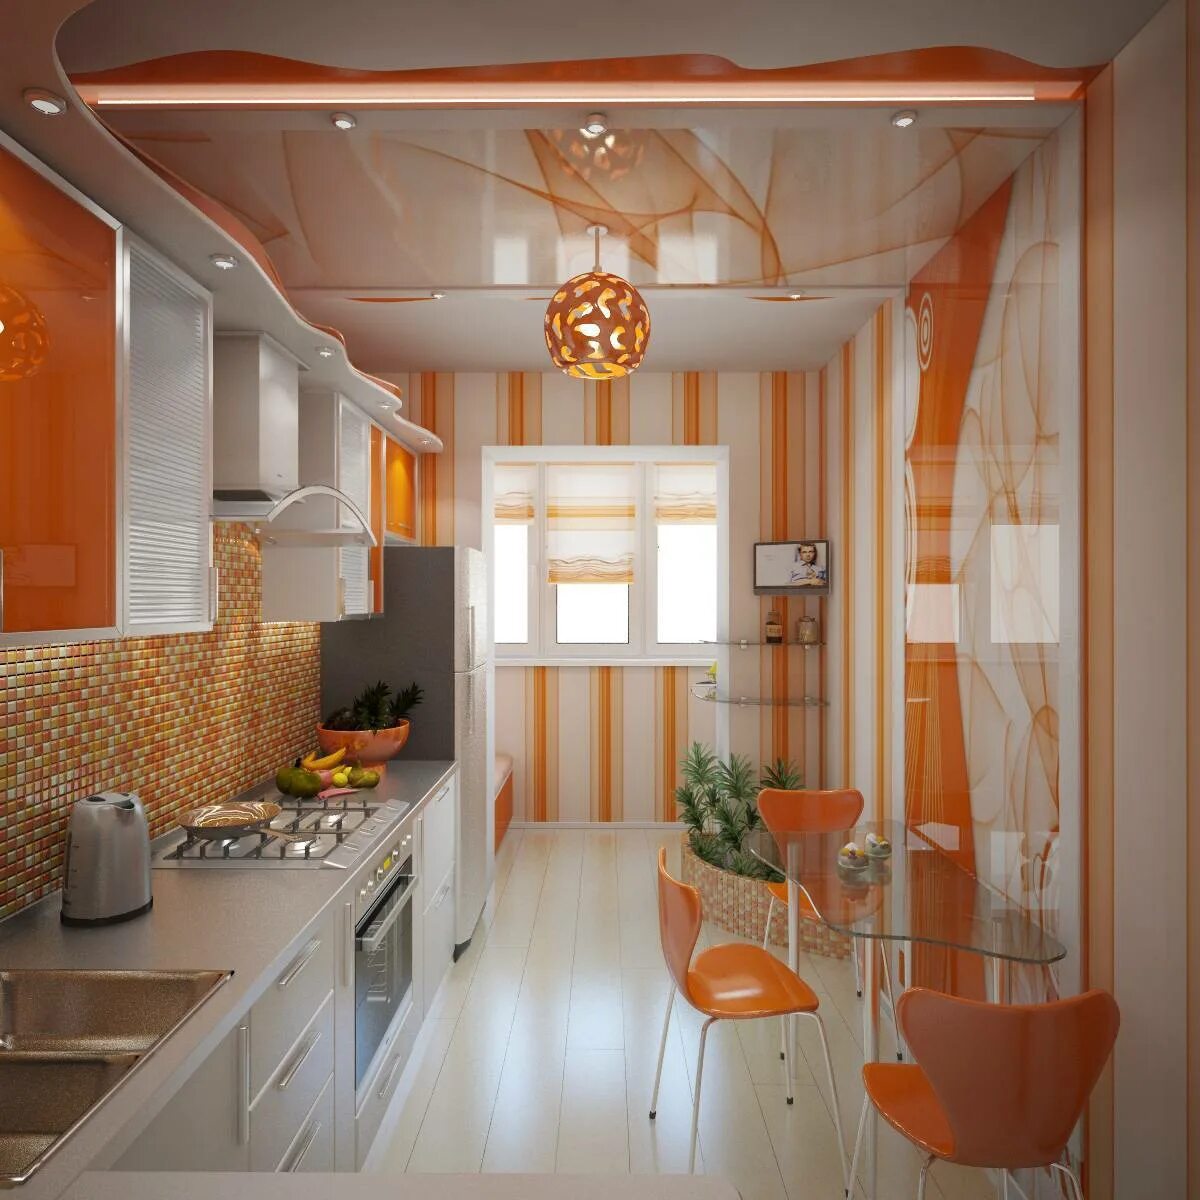 Кухни оранжевого цвета. Оранжевая кухня в интерьере. Оранжевый цвет в интерьере кухни. Кухня ворандевых тоонах.